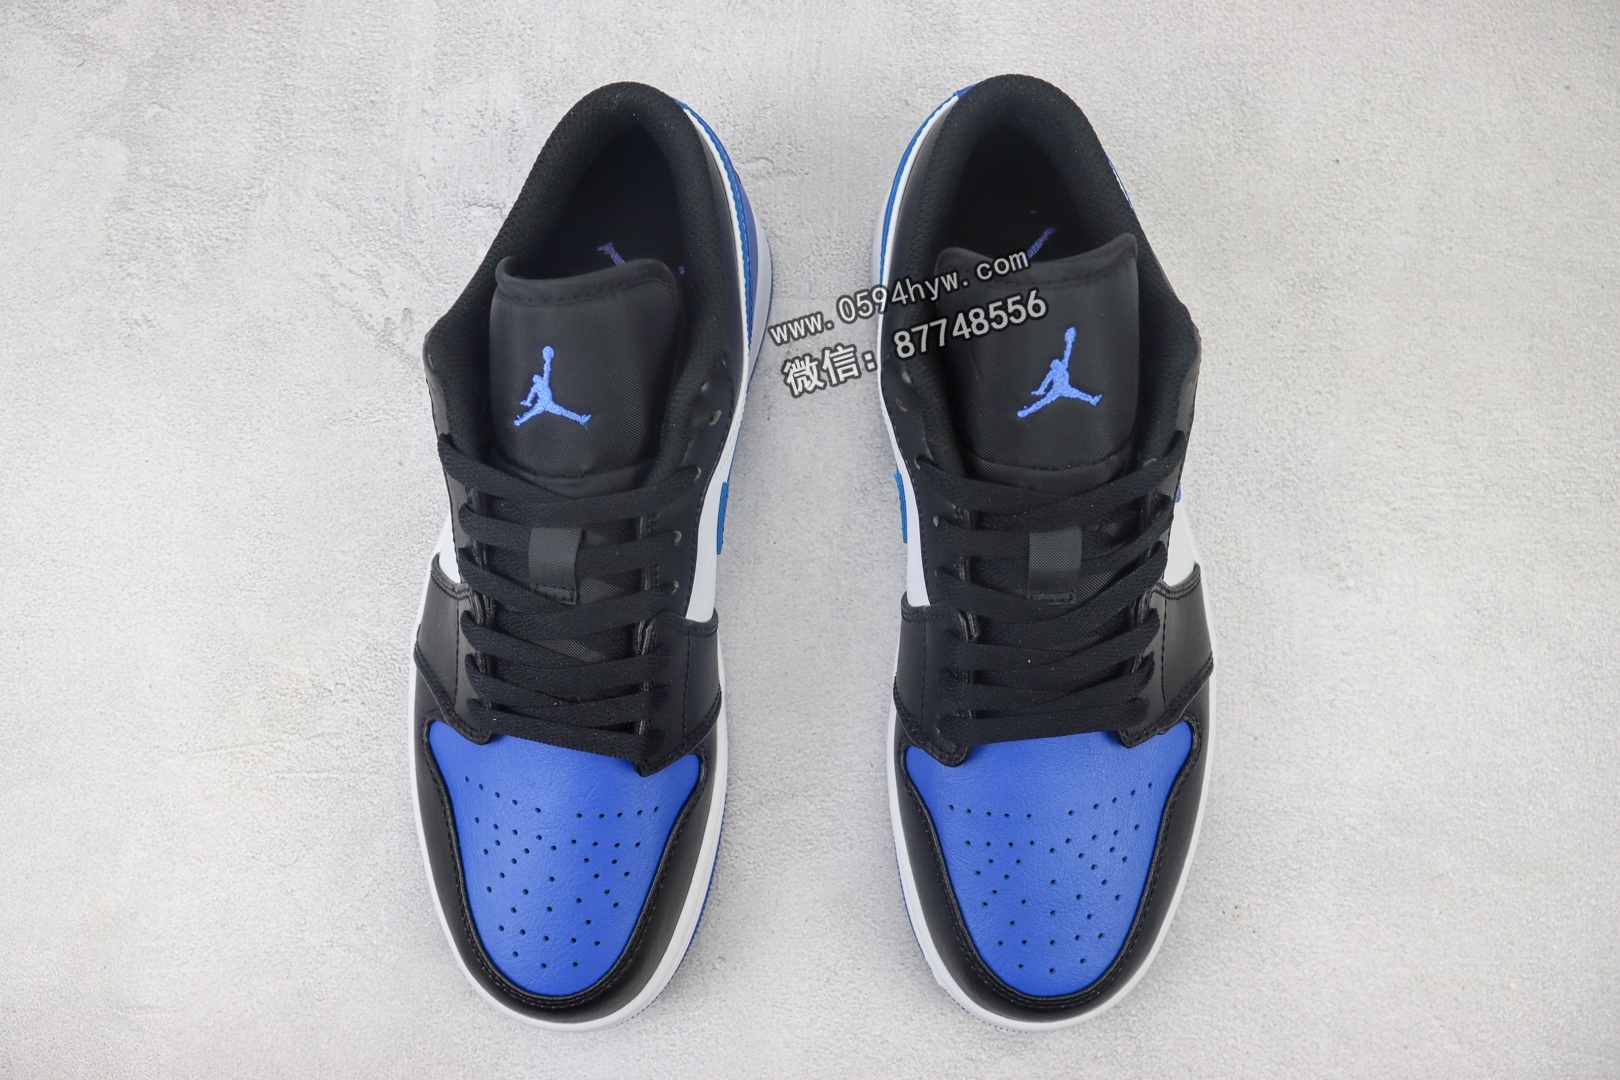 Nike Air, NIKE, Jordan, Air Jordan 1 Low, Air Jordan 1, Air Jordan, AI, 553558 - Nike Air Jordan 1 Low 黑白蓝 553558-140